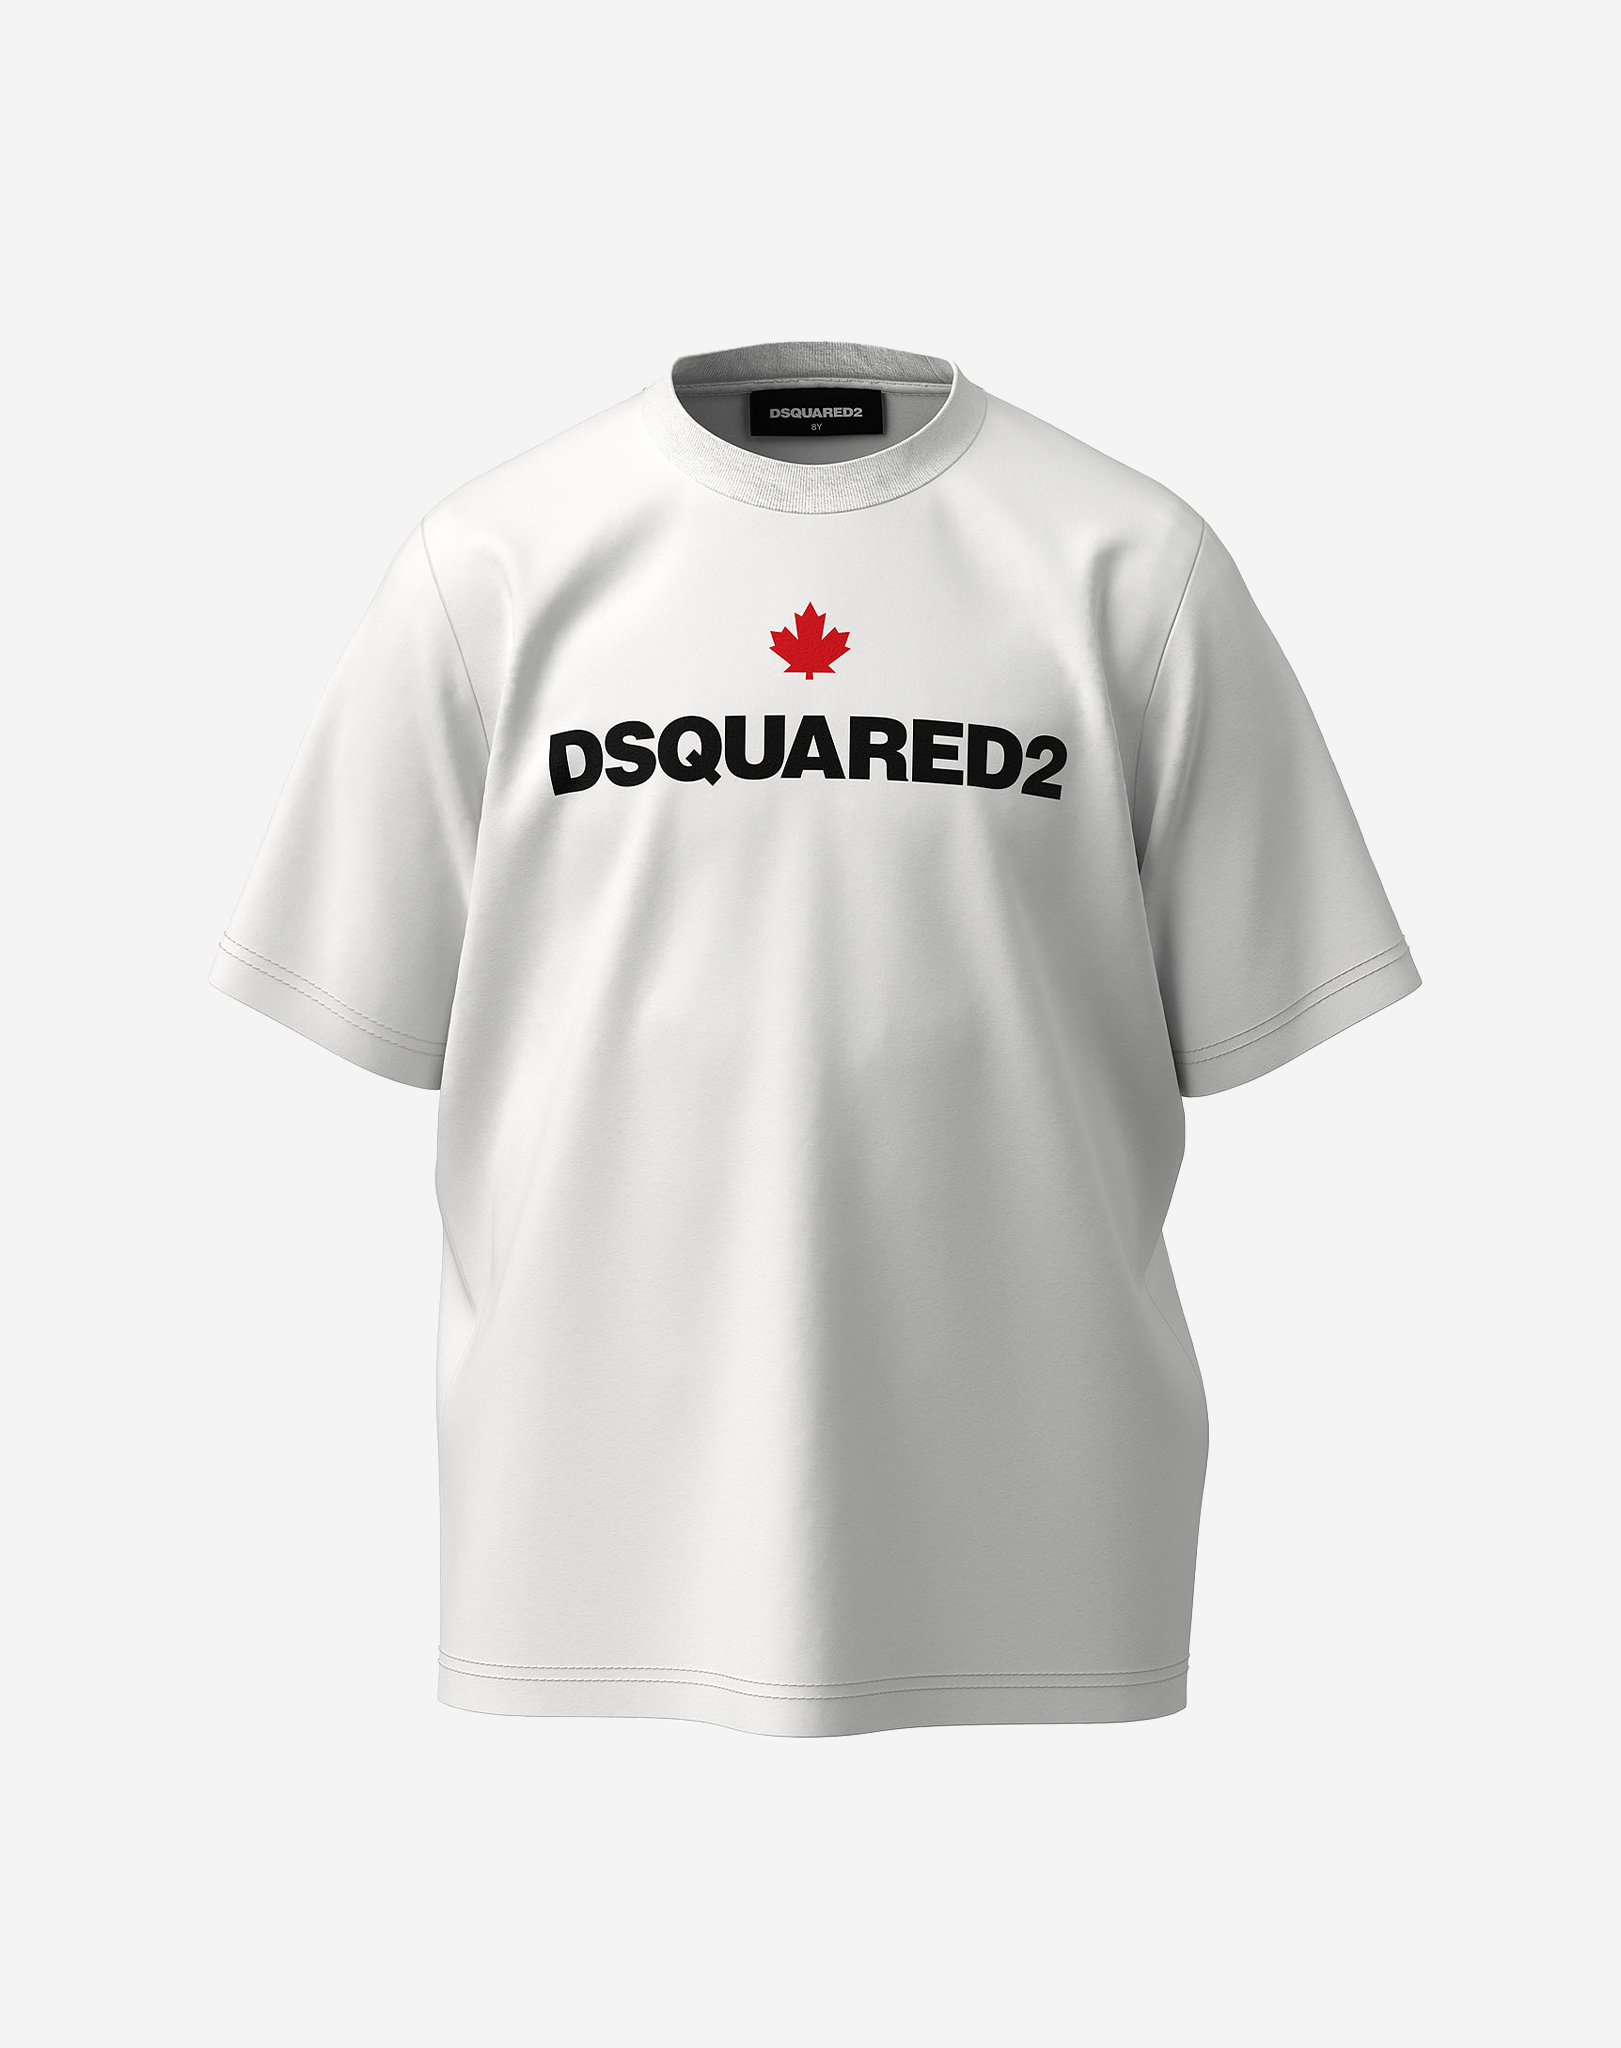 krans Kampioenschap Bederven Dsquared2 Junior Slouch T-shirt Wit